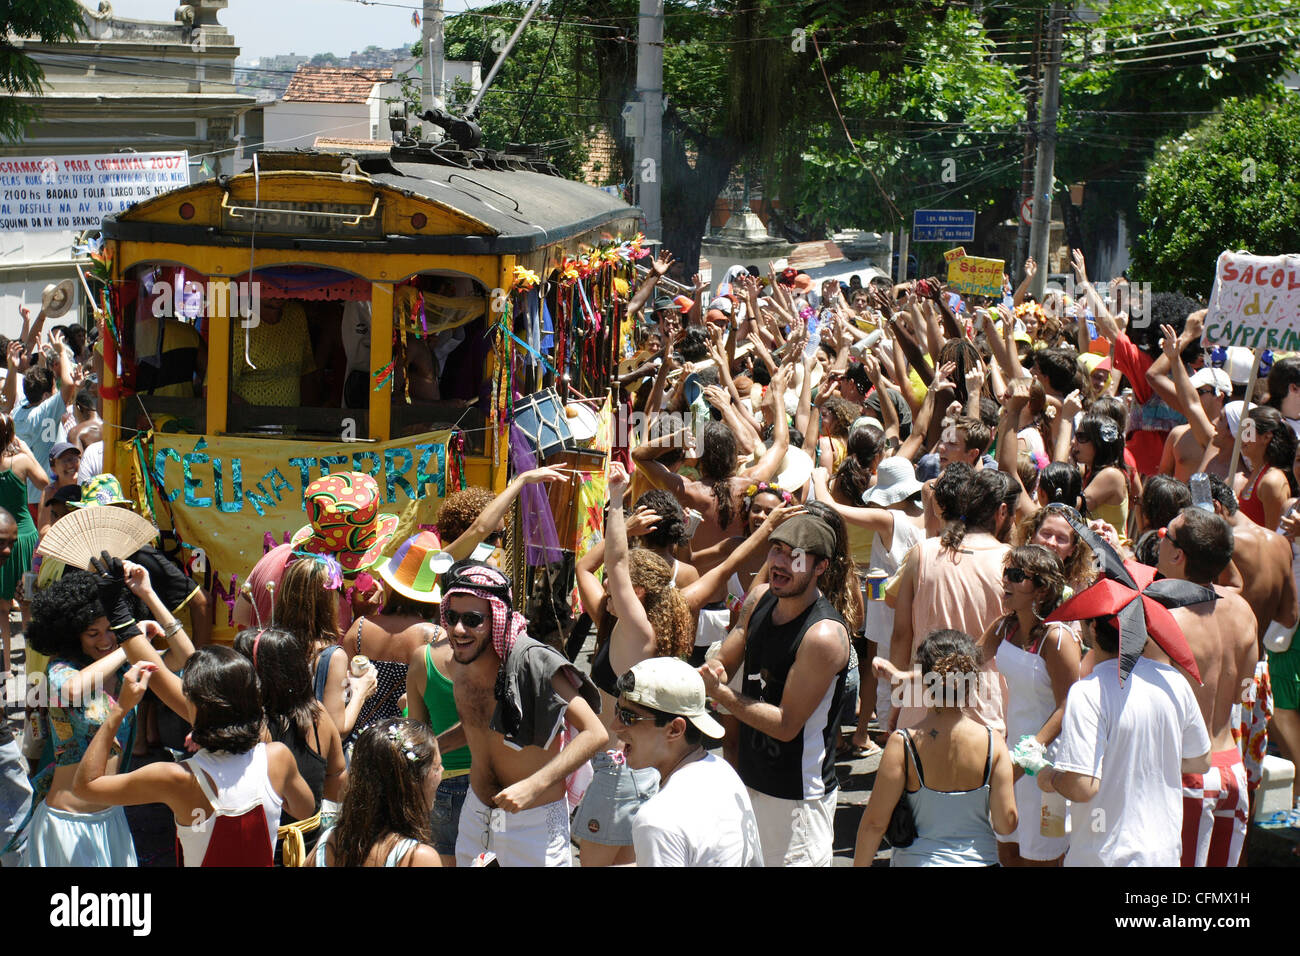 Bloco Céu na Terra, barrio de Santa Teresa. Carnaval callejero de Rio de Janeiro, Brasil. Foto de stock